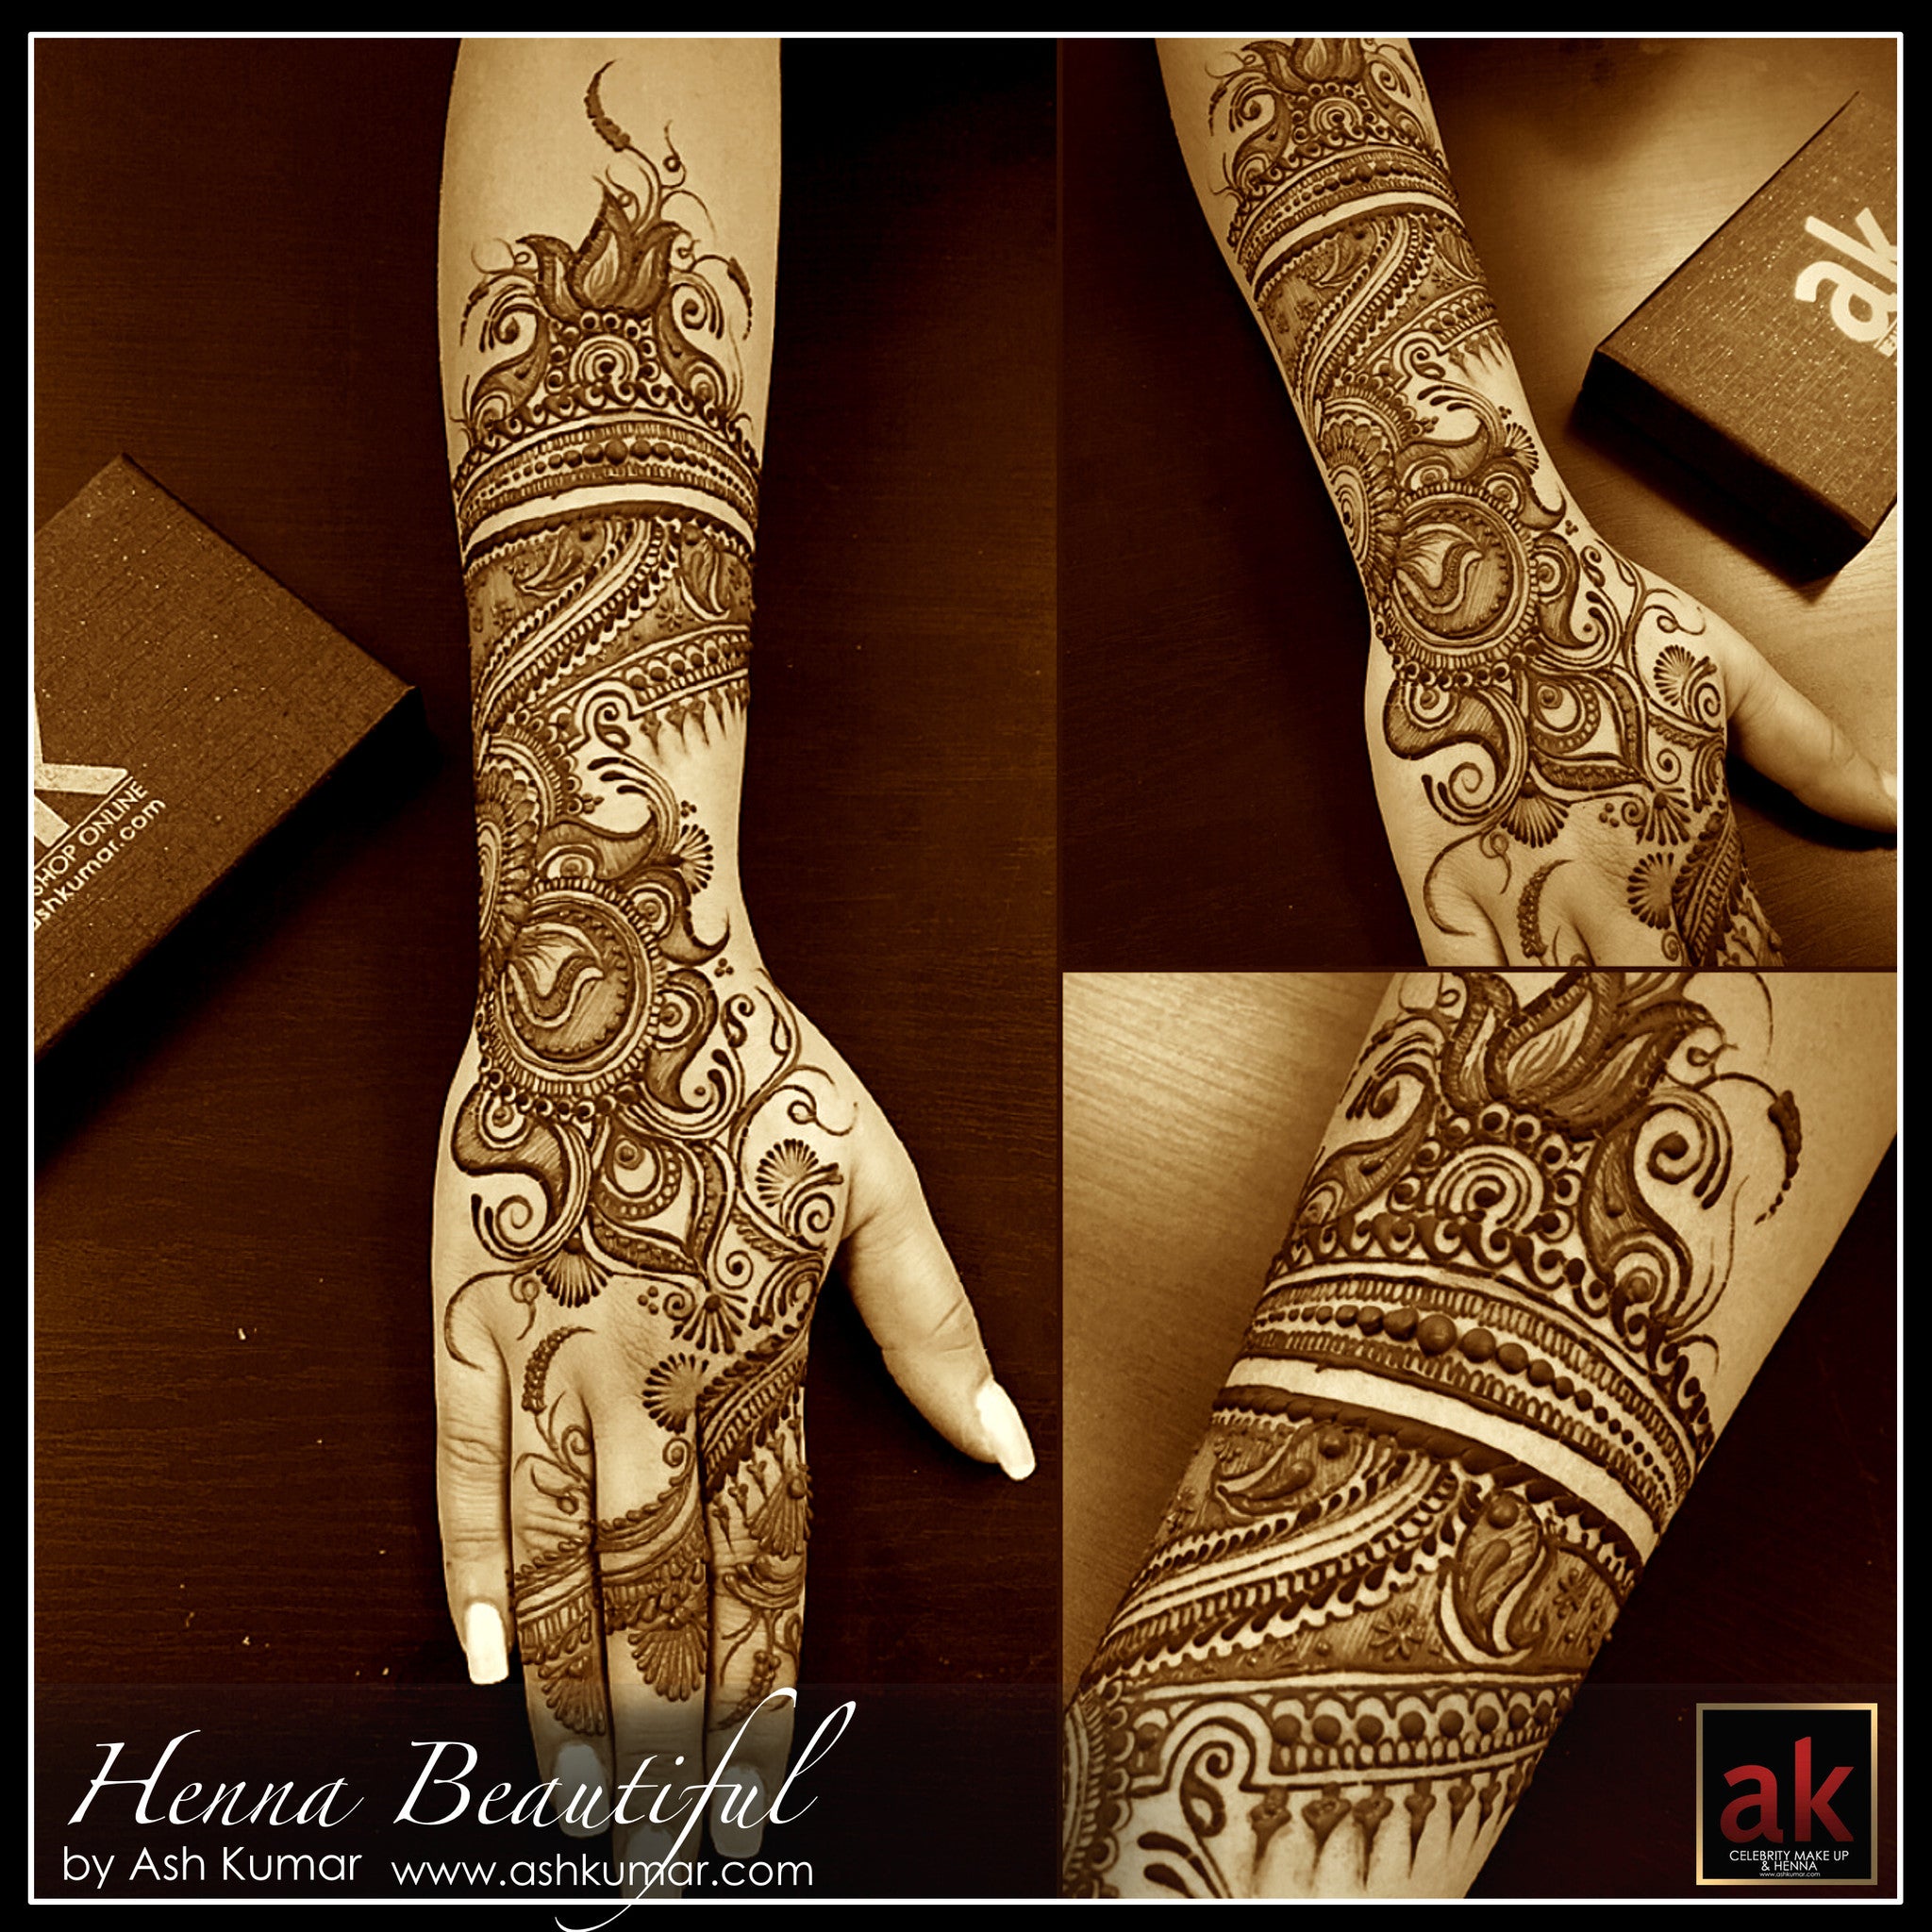 HENNA BEAUTIFUL BY ASH KUMAR